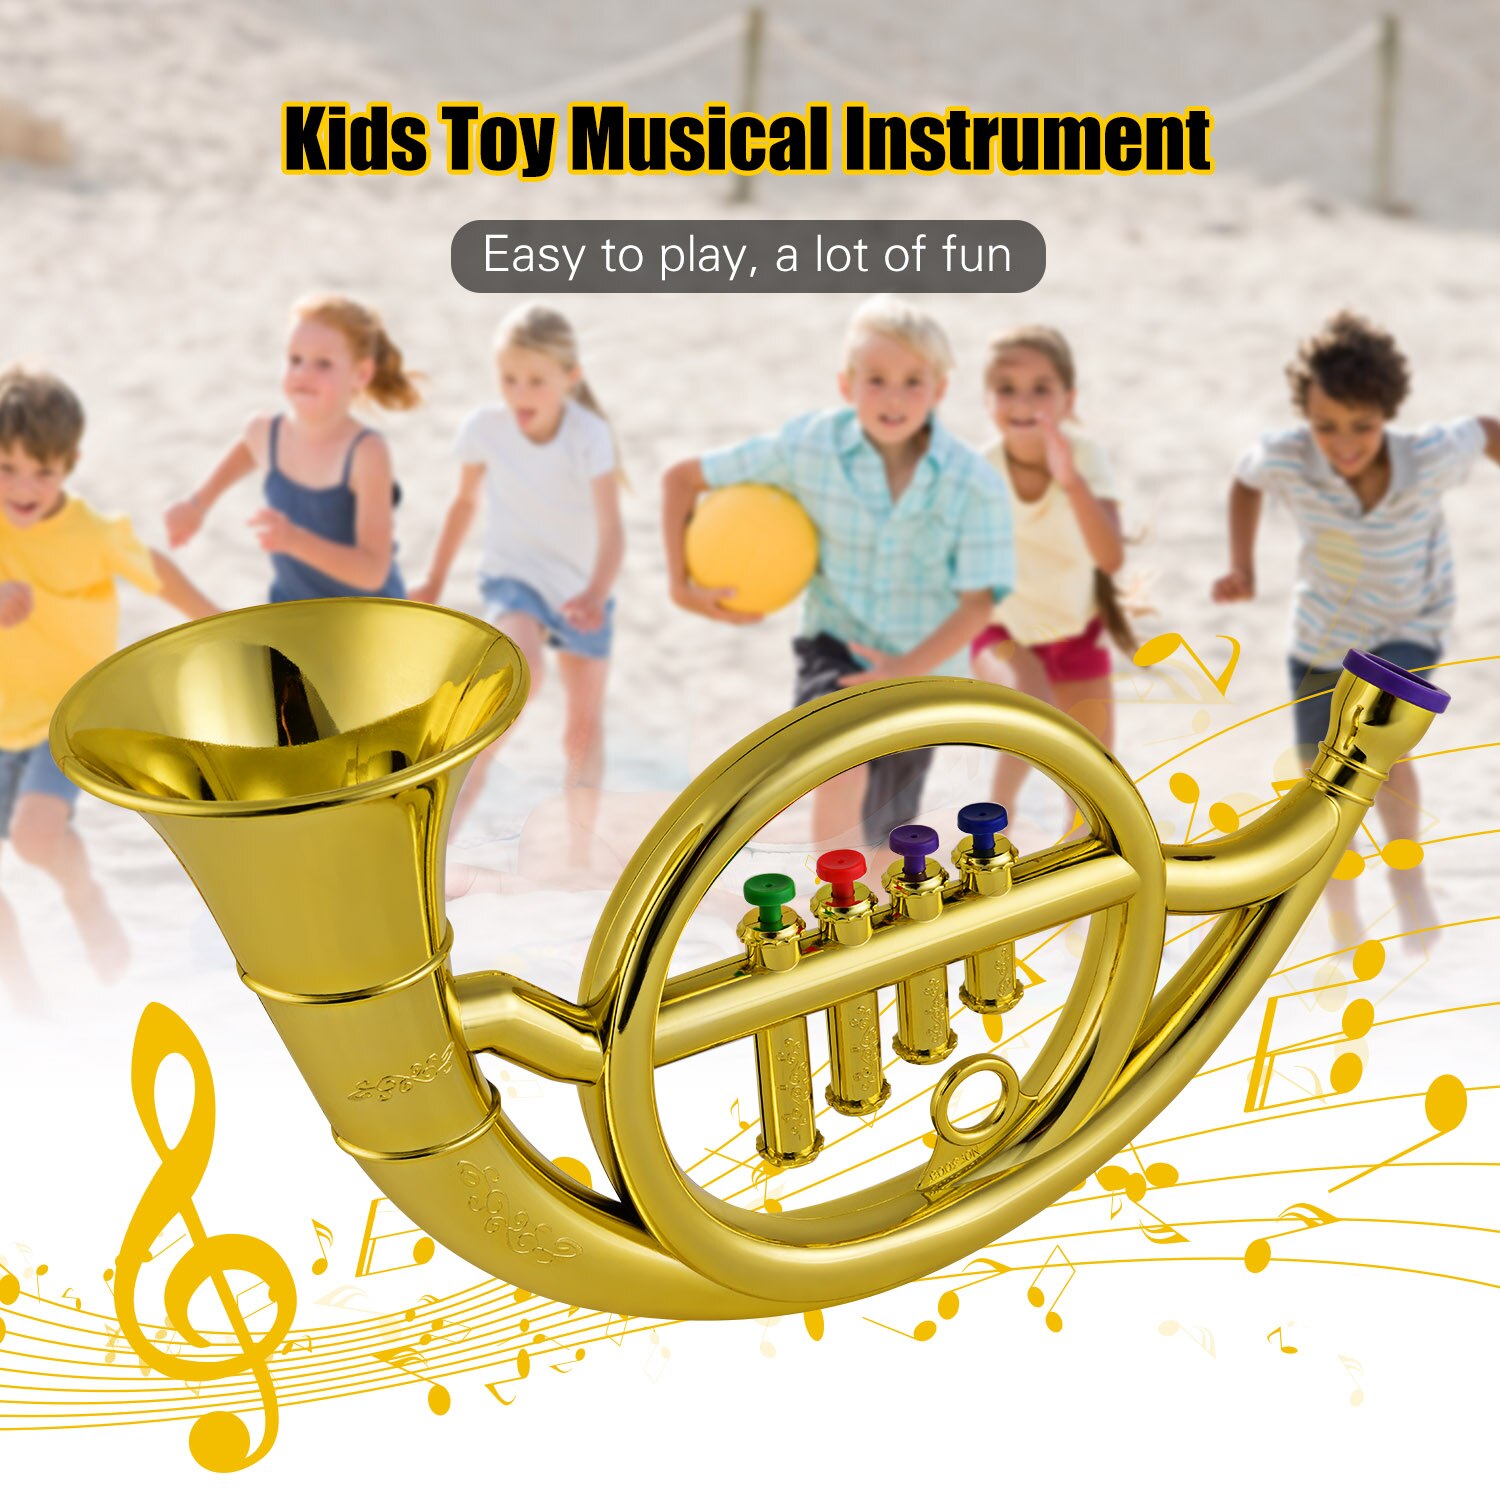 Musikalske blæseinstrumenter fransk horn til børn småbørn abs guldhorn med 4 farvede nøgler